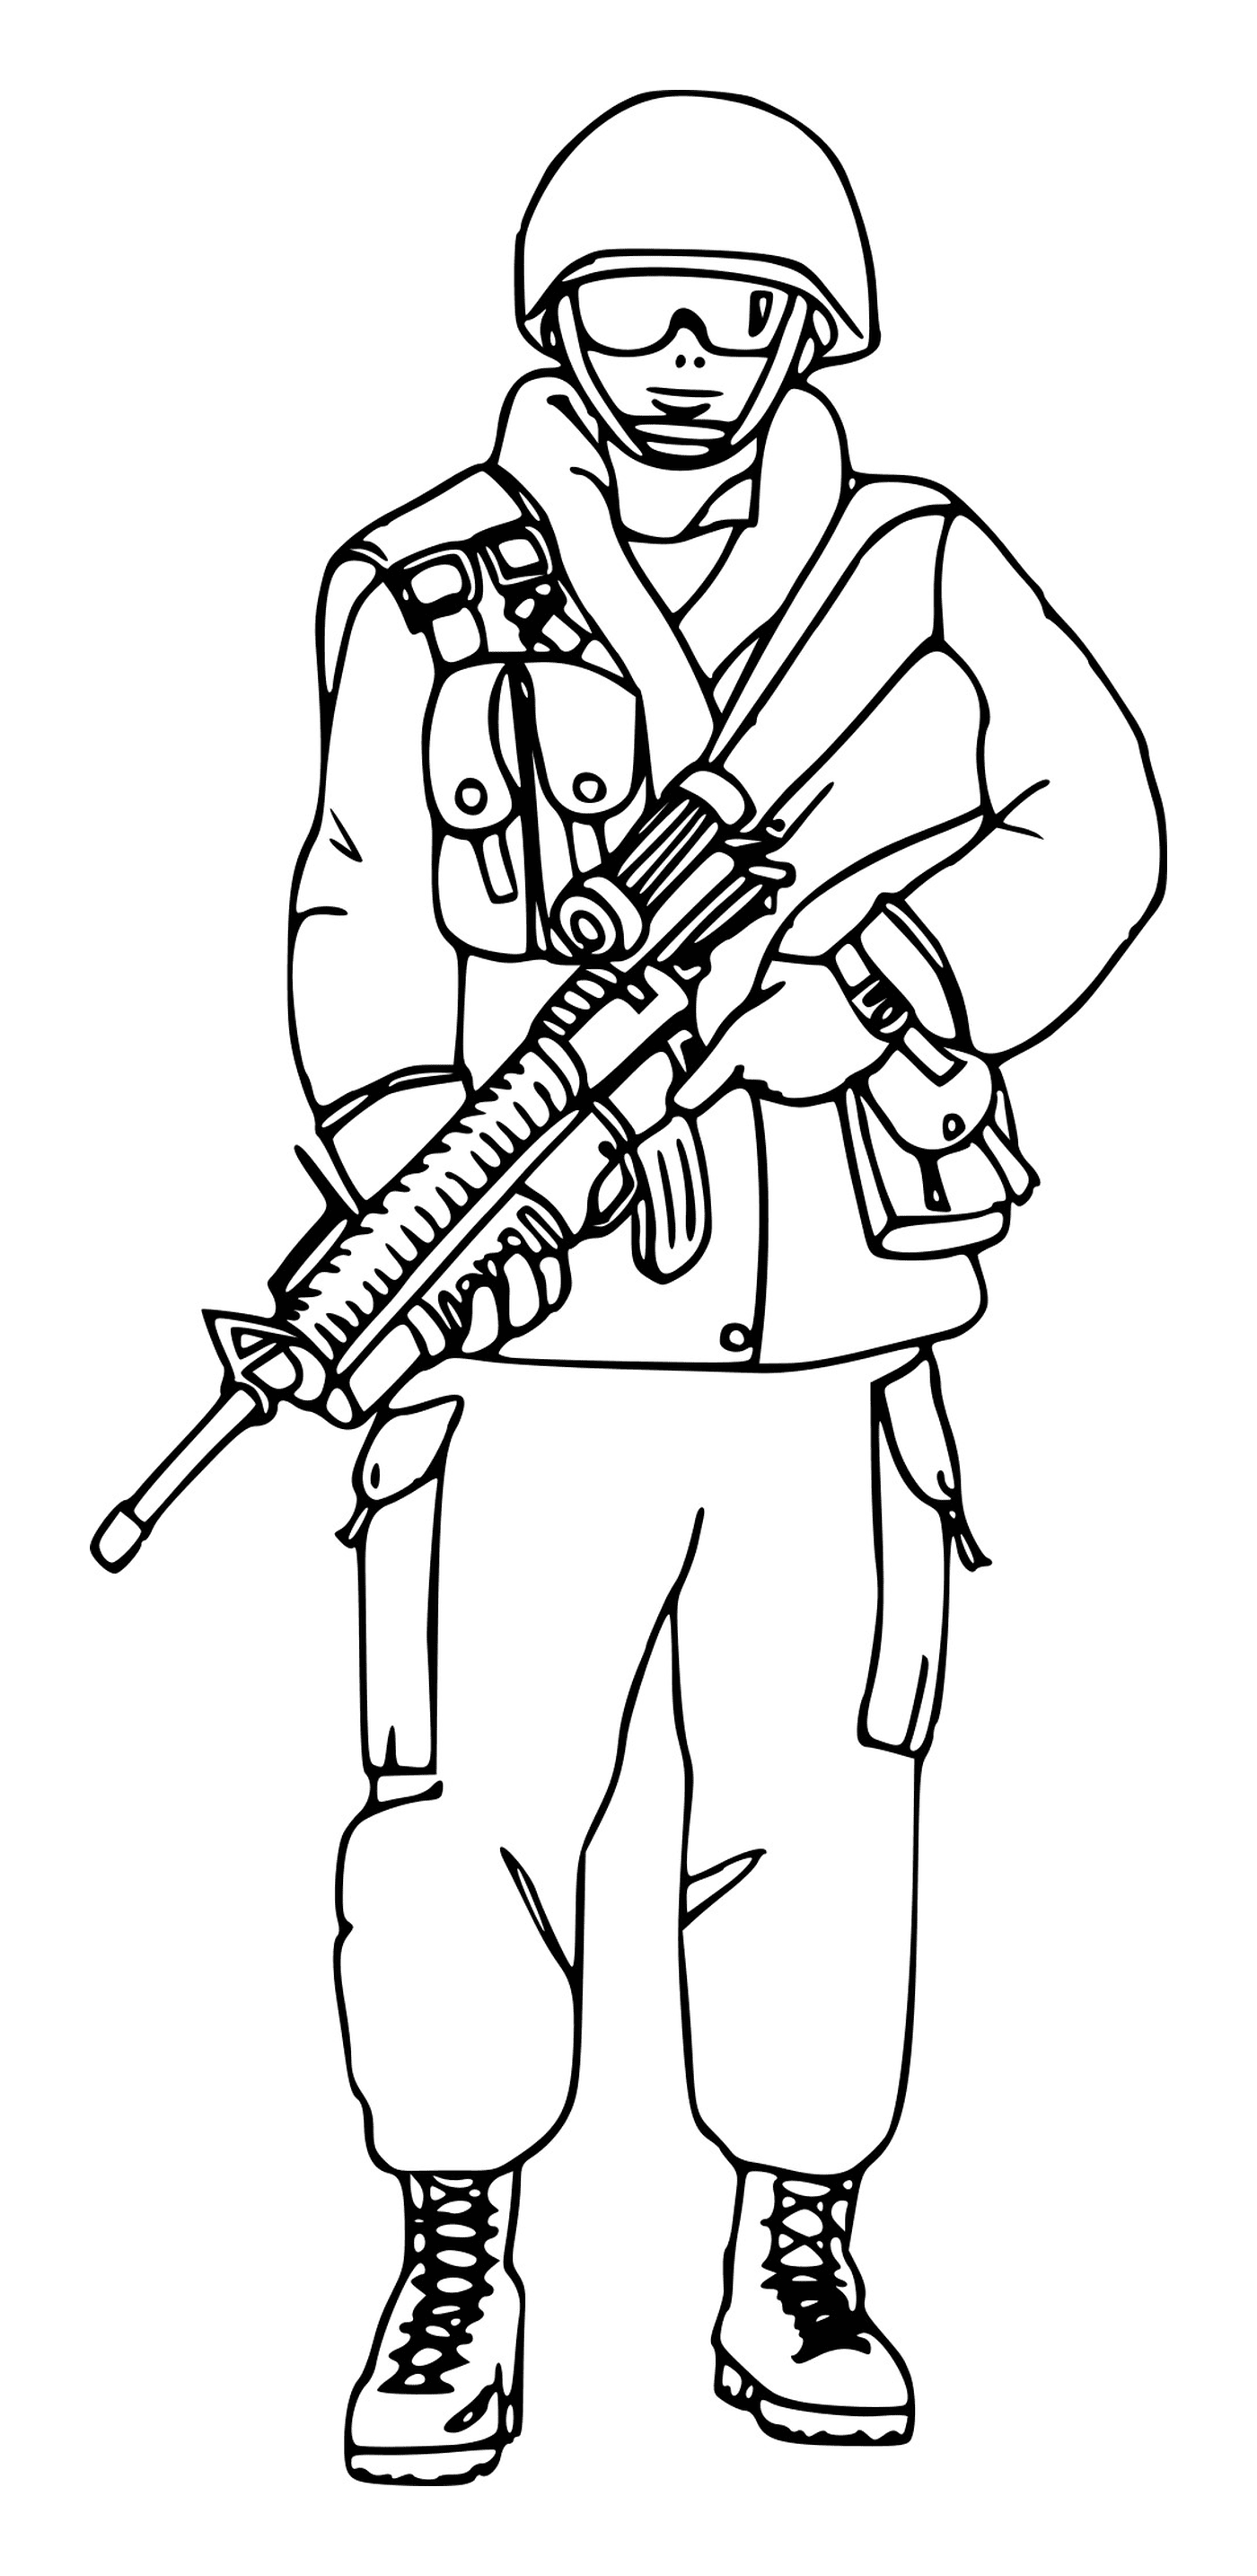  Soldado com óculos: um soldado segurando um rifle 